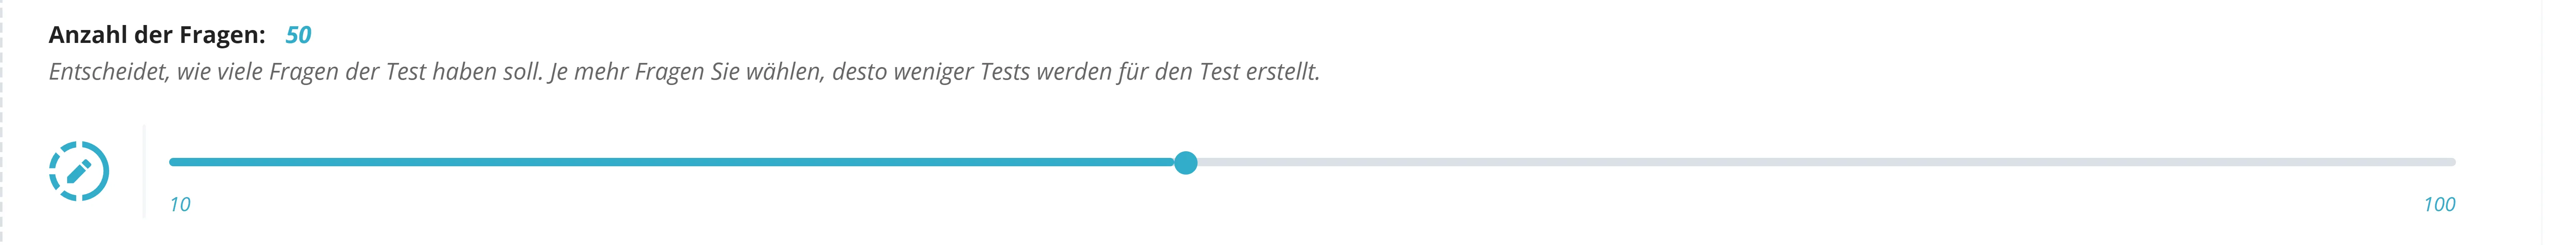 Hier ist ein Screenshot der Testanzahlauswahl von dem IHK Prüfung Praxistest für benutzerdefinierte Testanzahlenauswahl